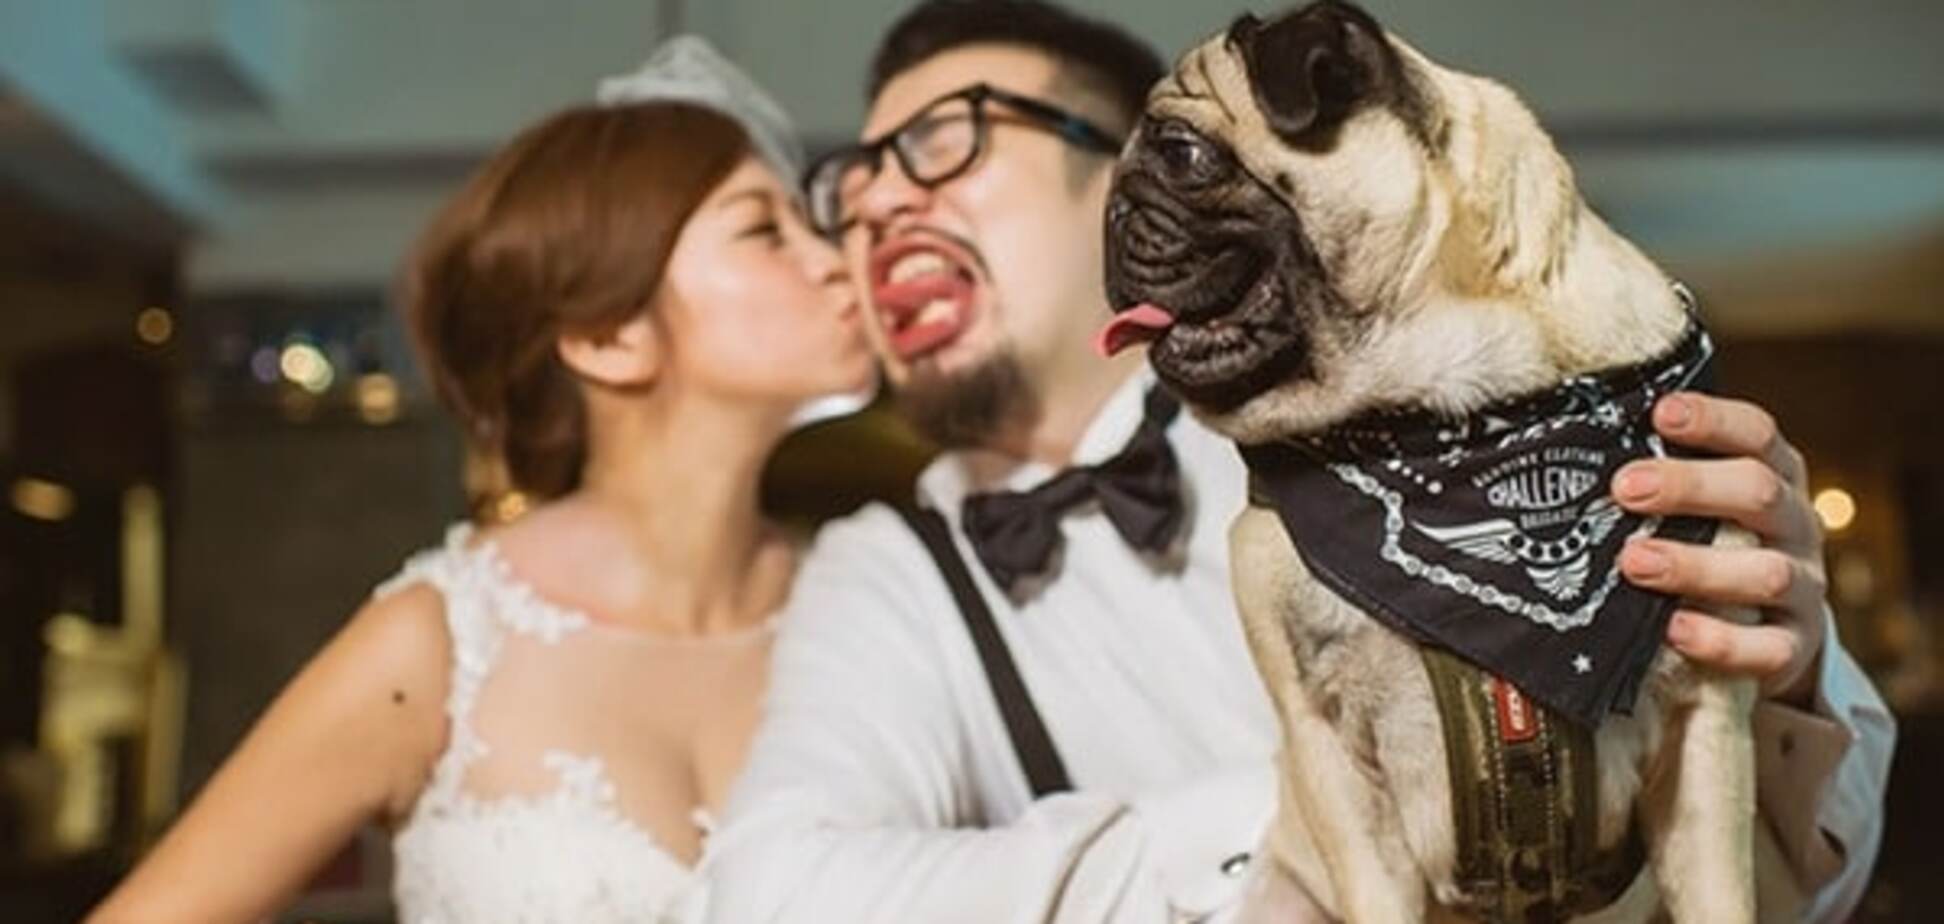 Счастье молодым: опубликованы смешные свадебные фото со всего мира